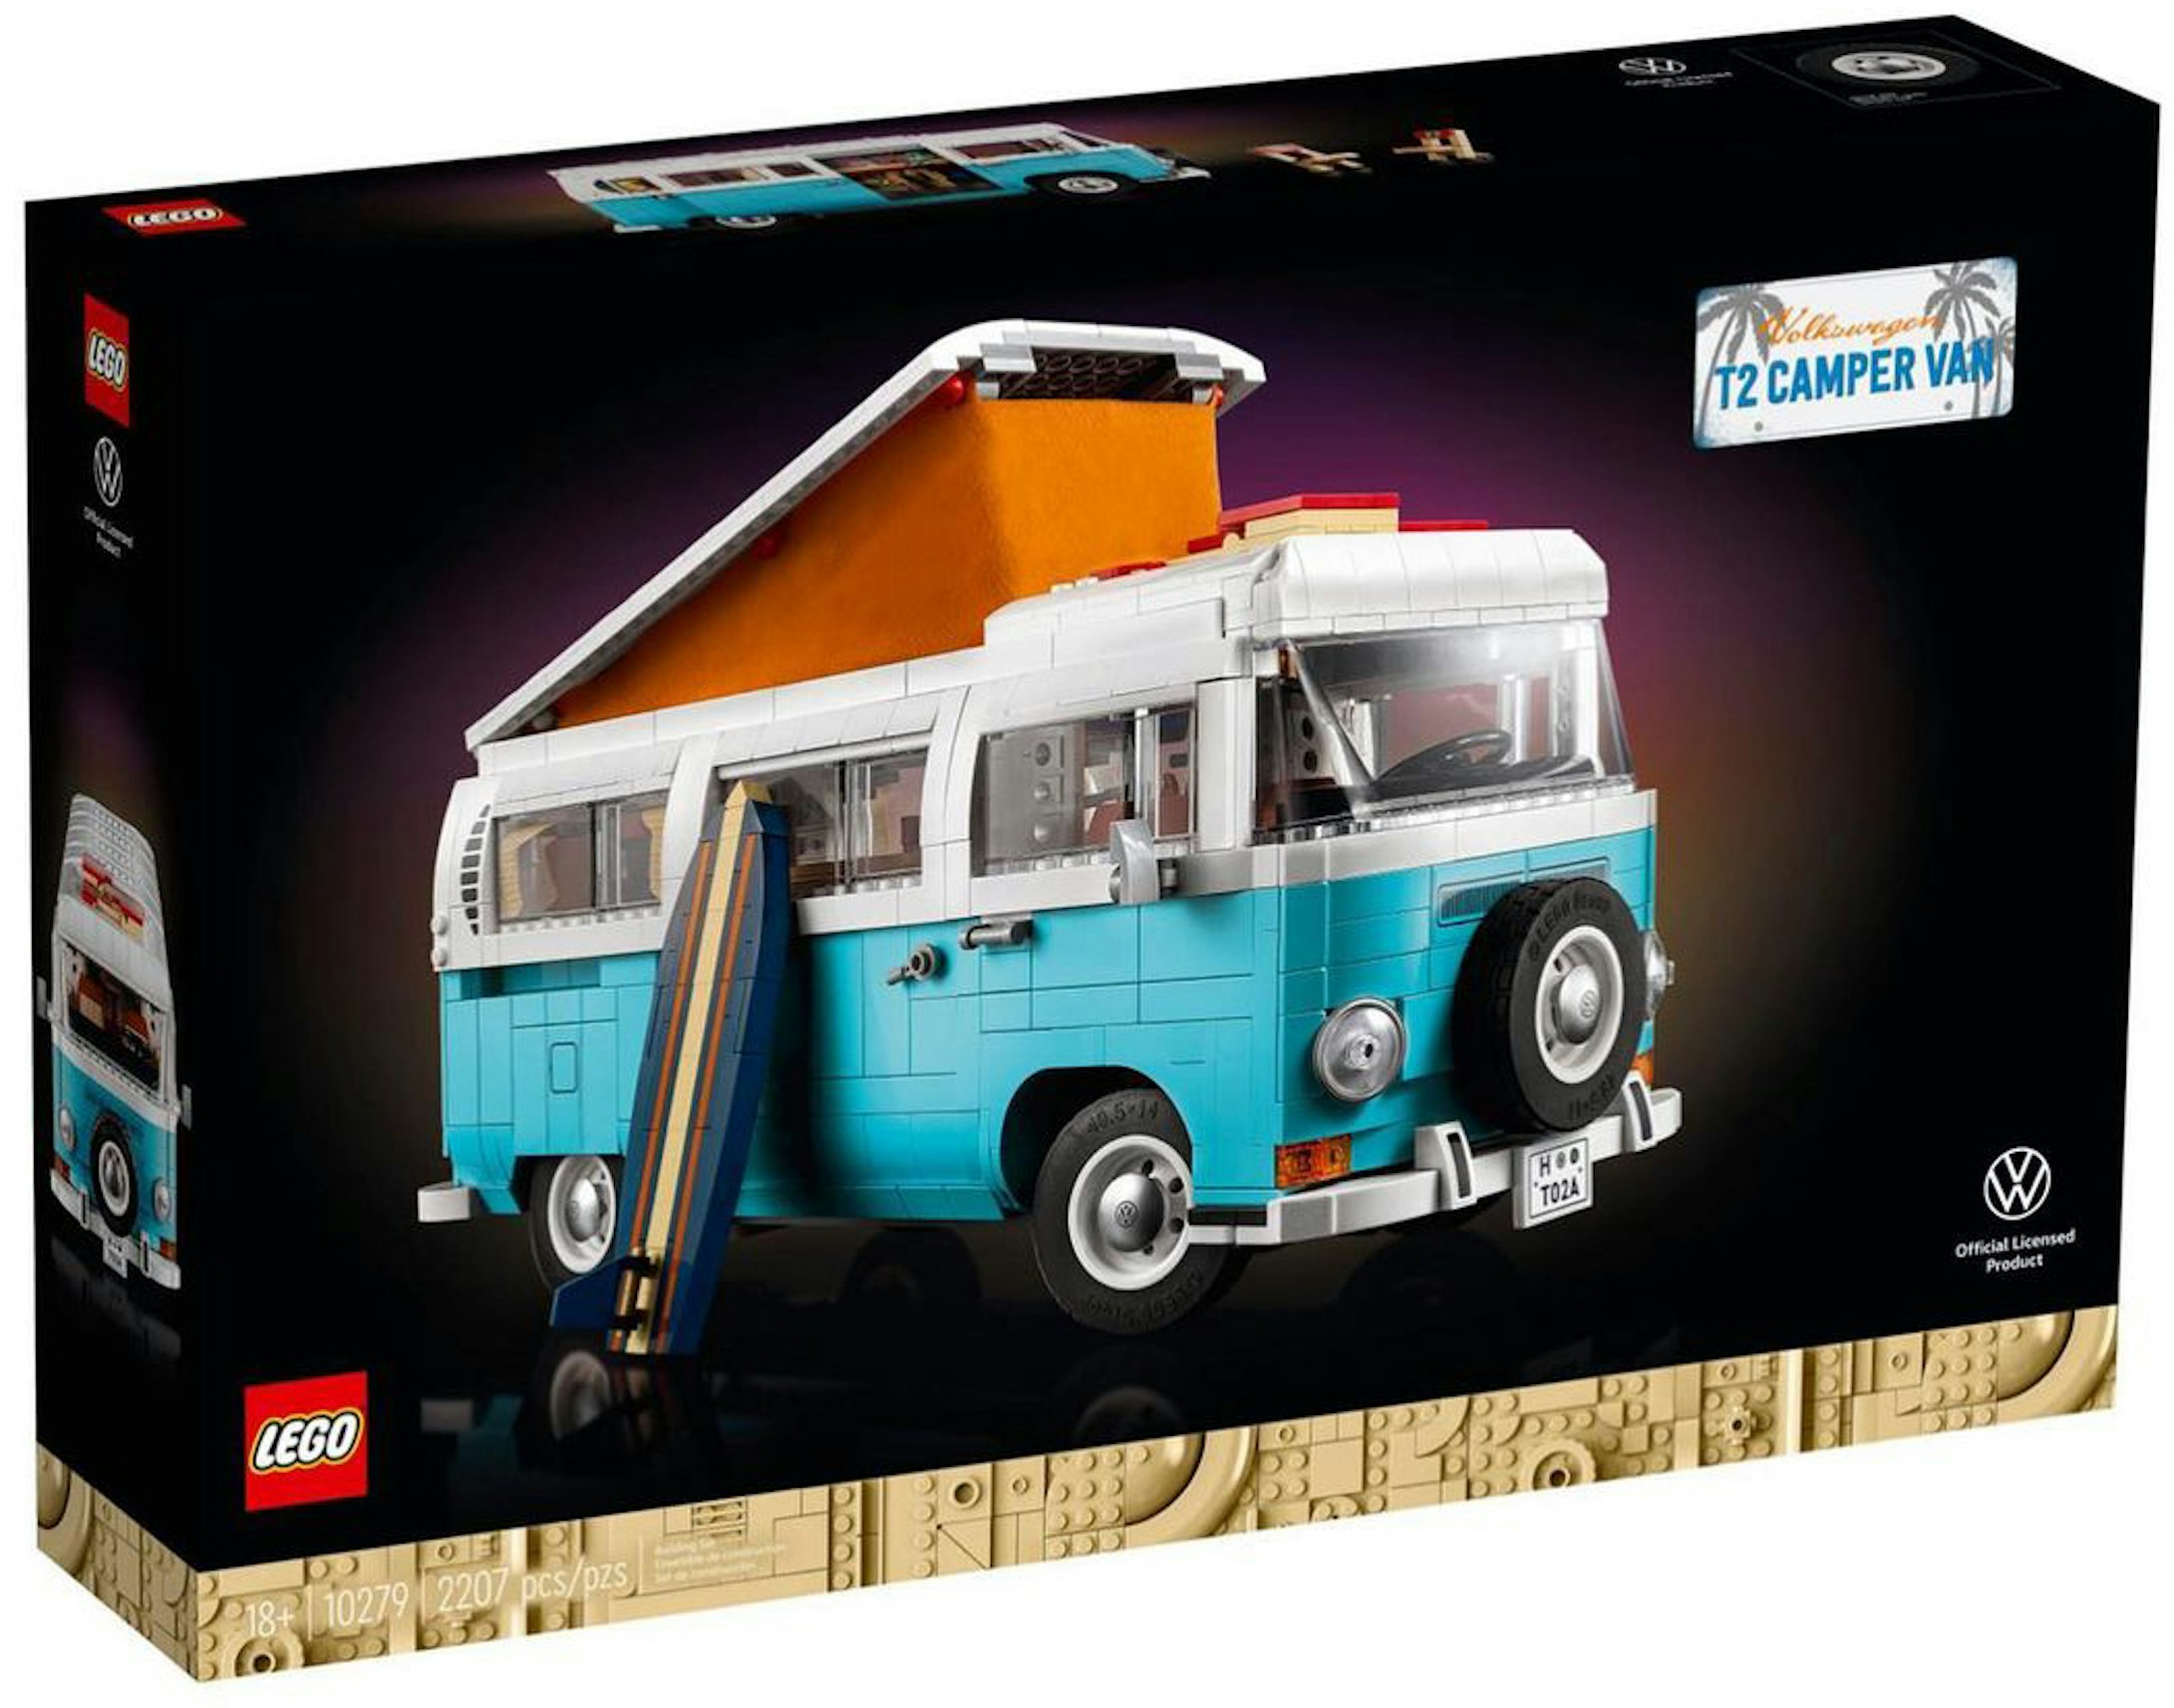 dø Hover firkant LEGO Volkswagen T2 Camper Van Set 10279 Blue/White - FW21 - US